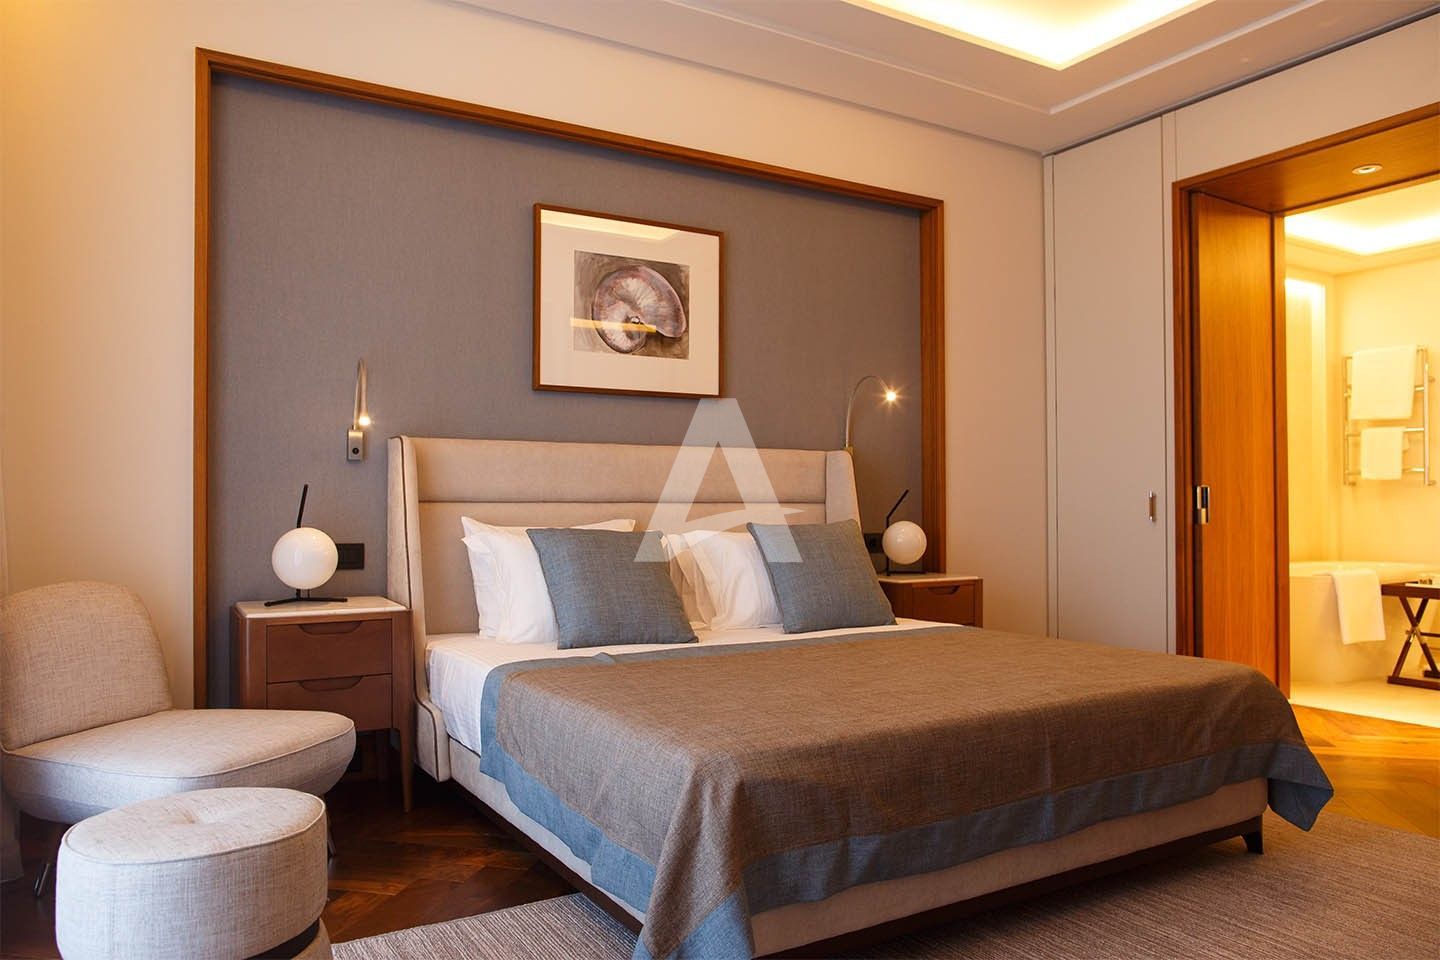 amforaproperty.com/Luksuzan jednosoban stan 76m2 u hotelu Regent , Porto montenegro (NA DUZI PERIOD)